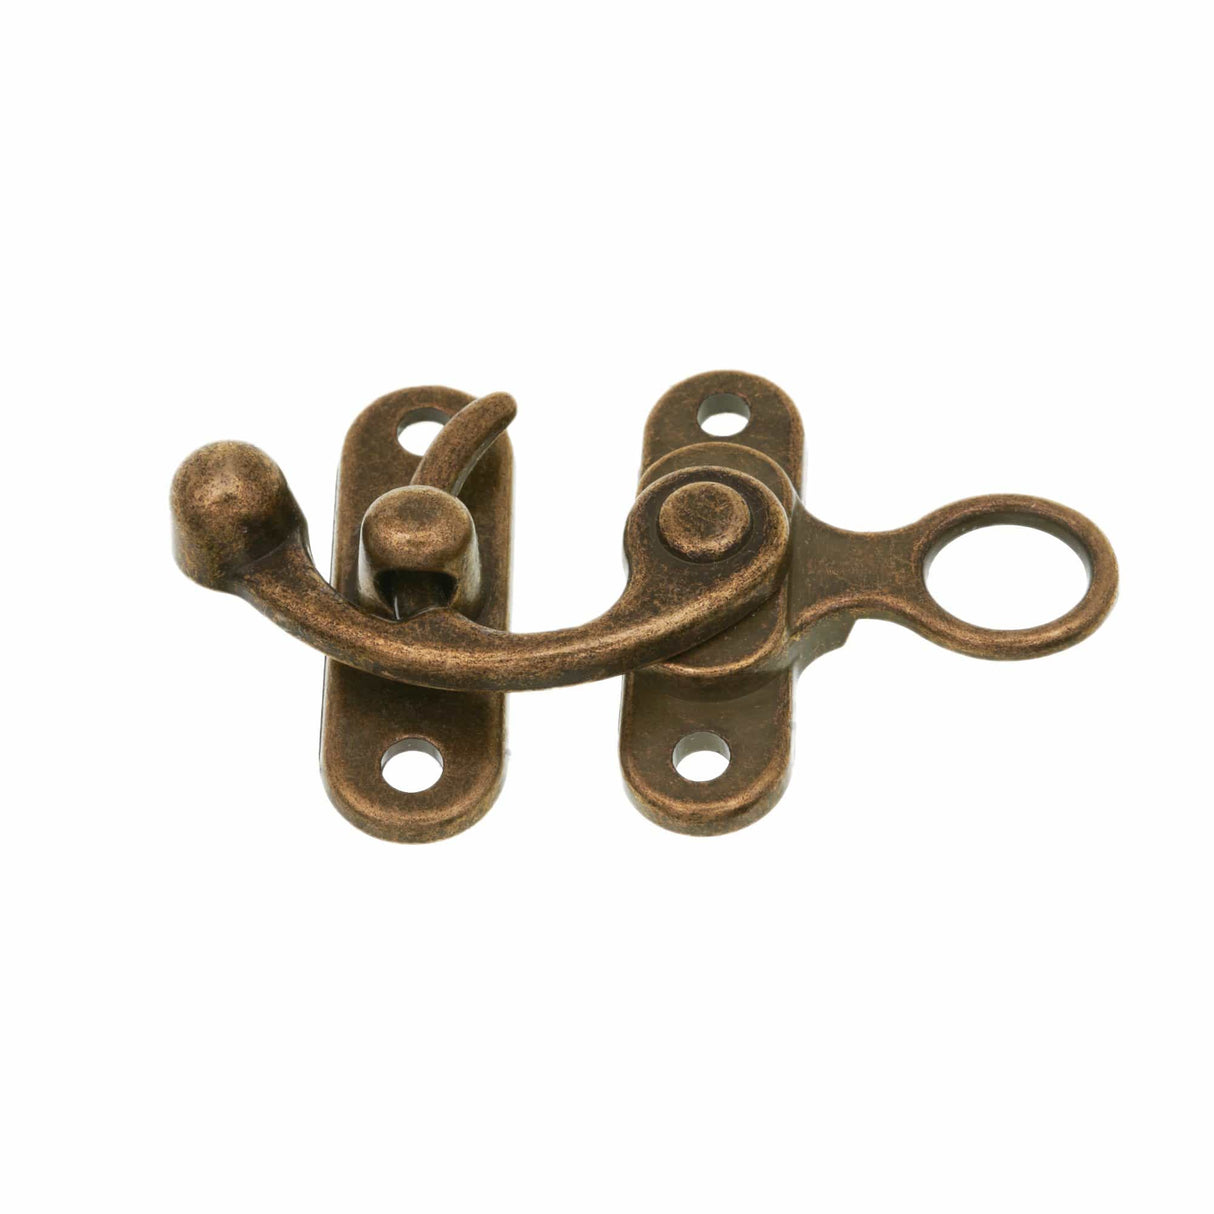 Ohio Travel Bag Locks & Closures 1 3/4" Antique Brass, Purse Fastener, Zinc Alloy, #P-2127-ANTB P-2127-ANTB